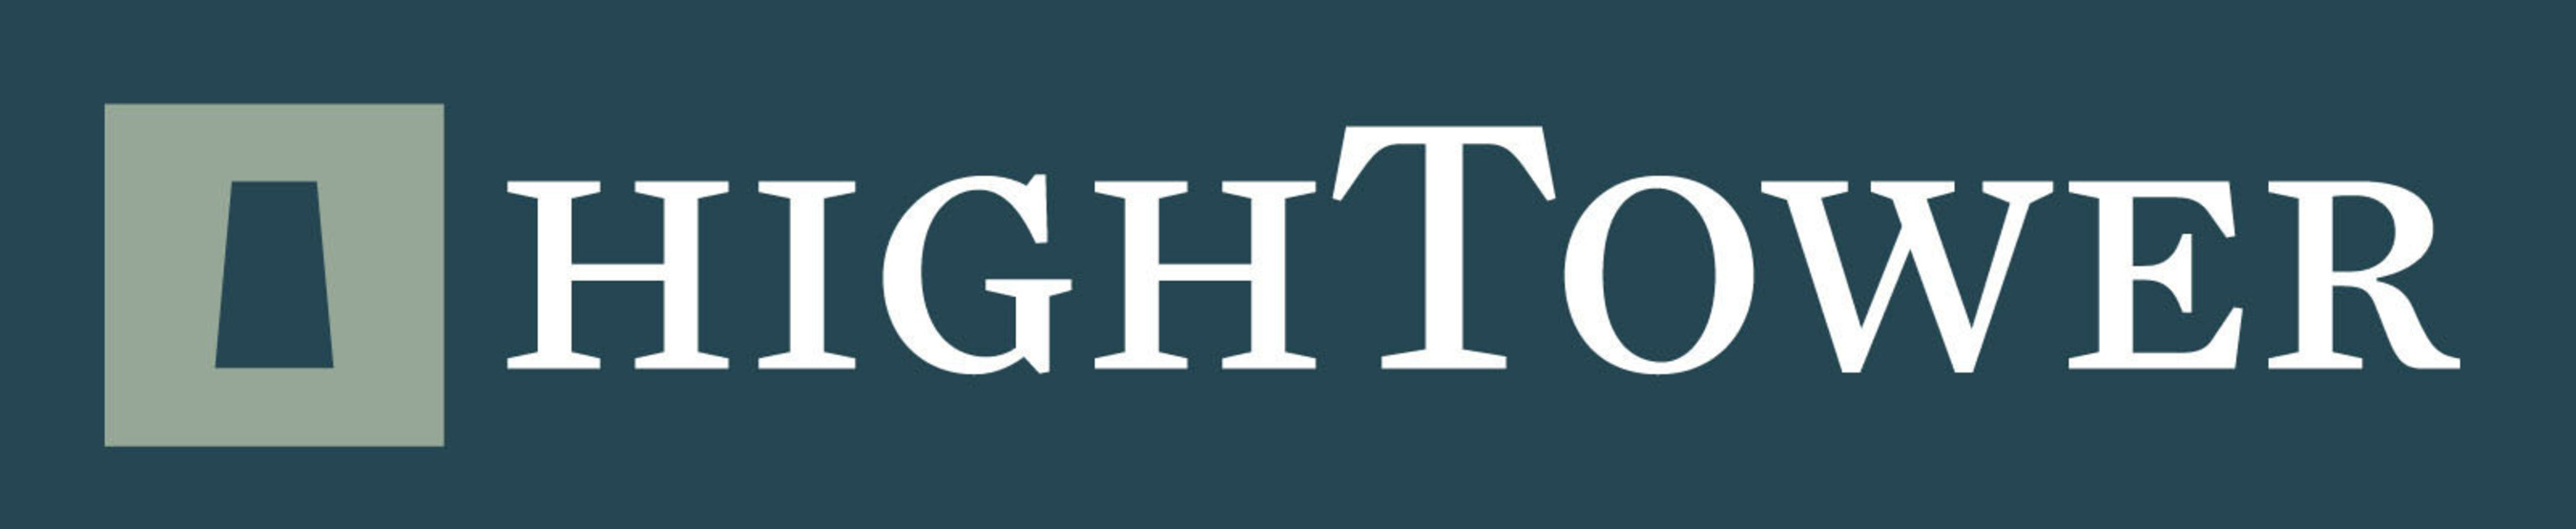 HighTower Logo.